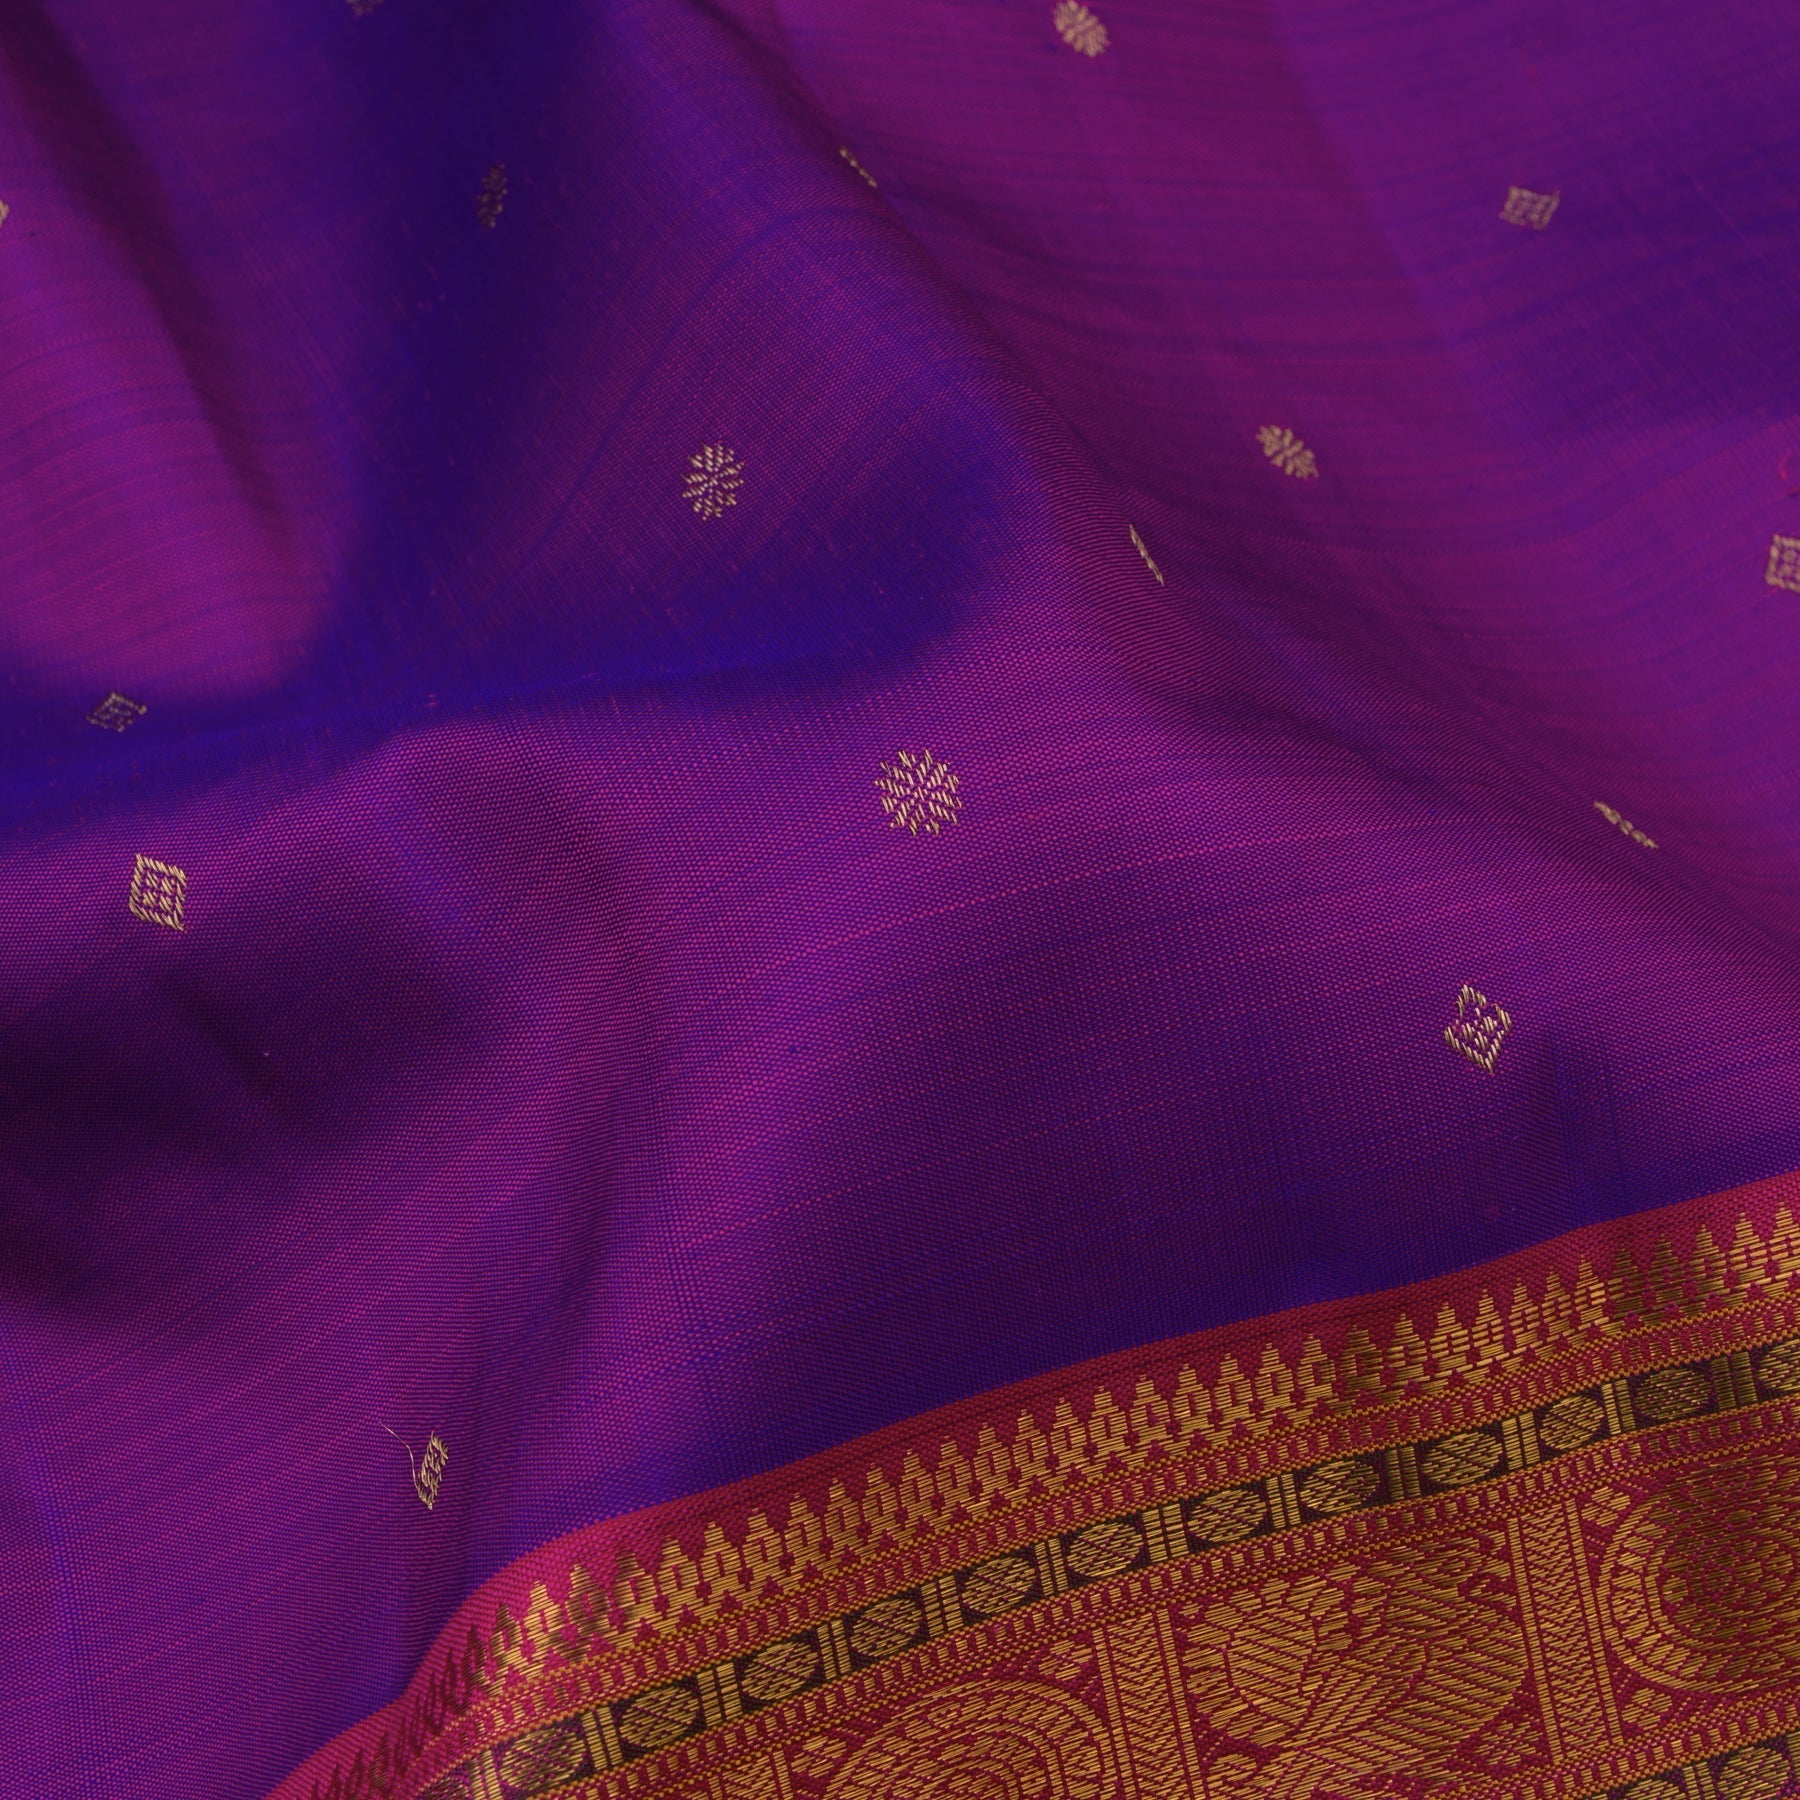 Kanakavalli Kanjivaram Silk Sari 23-110-HS001-01006 - Fabric View